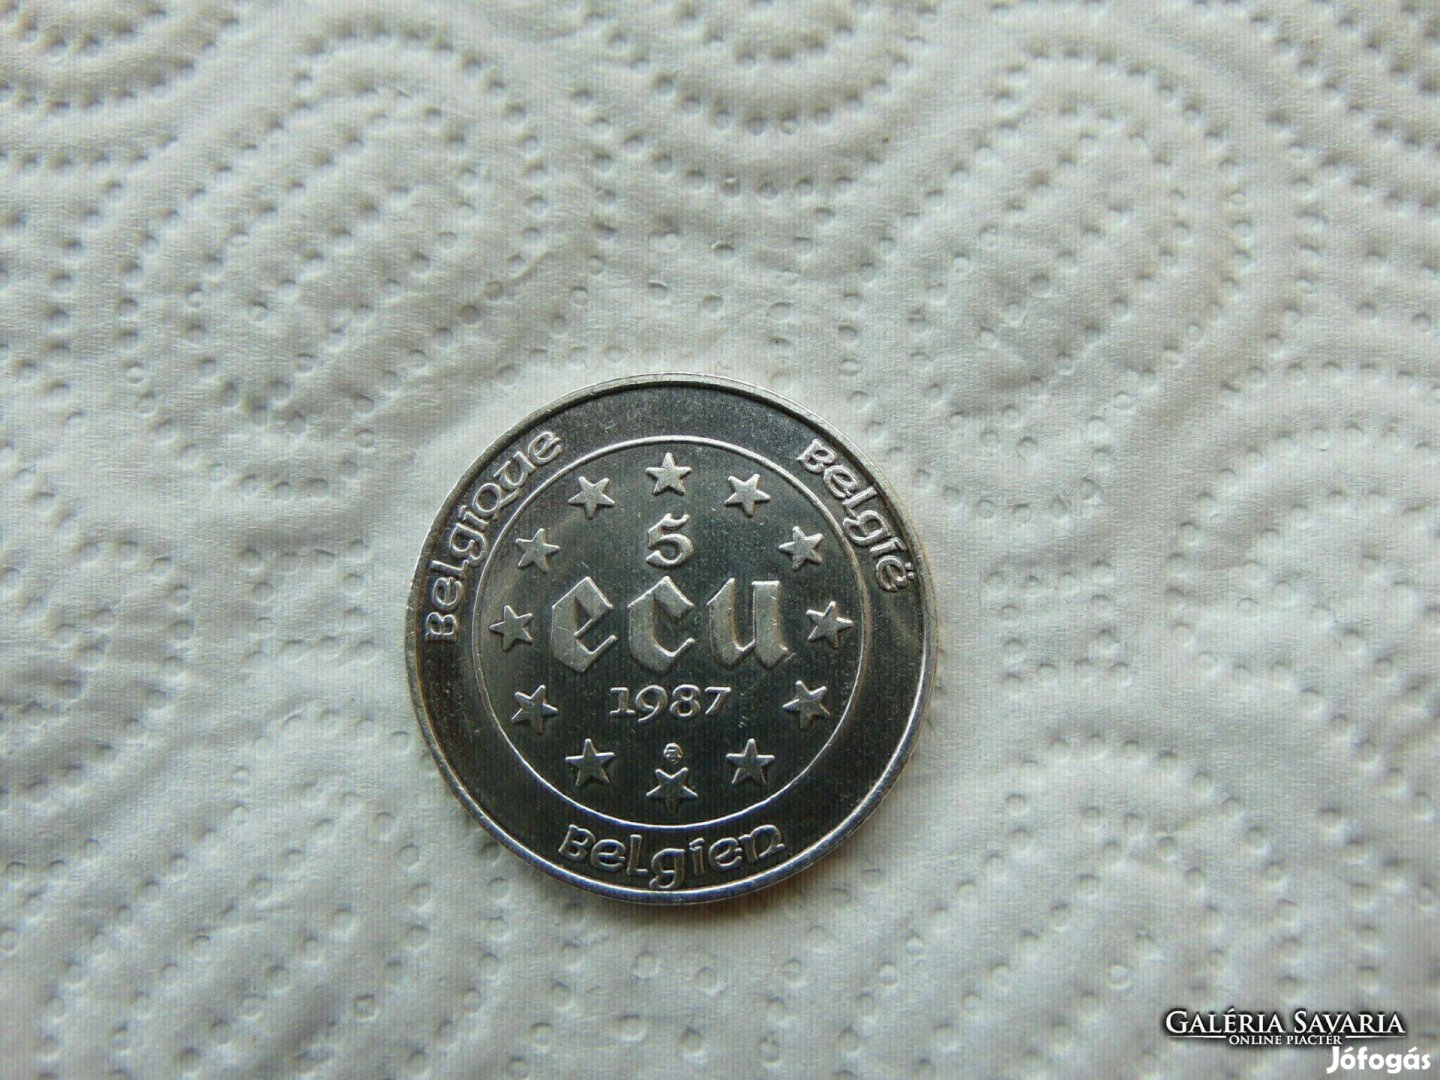 Belgium ezüst 5 ecu 1987 22.85 gramm